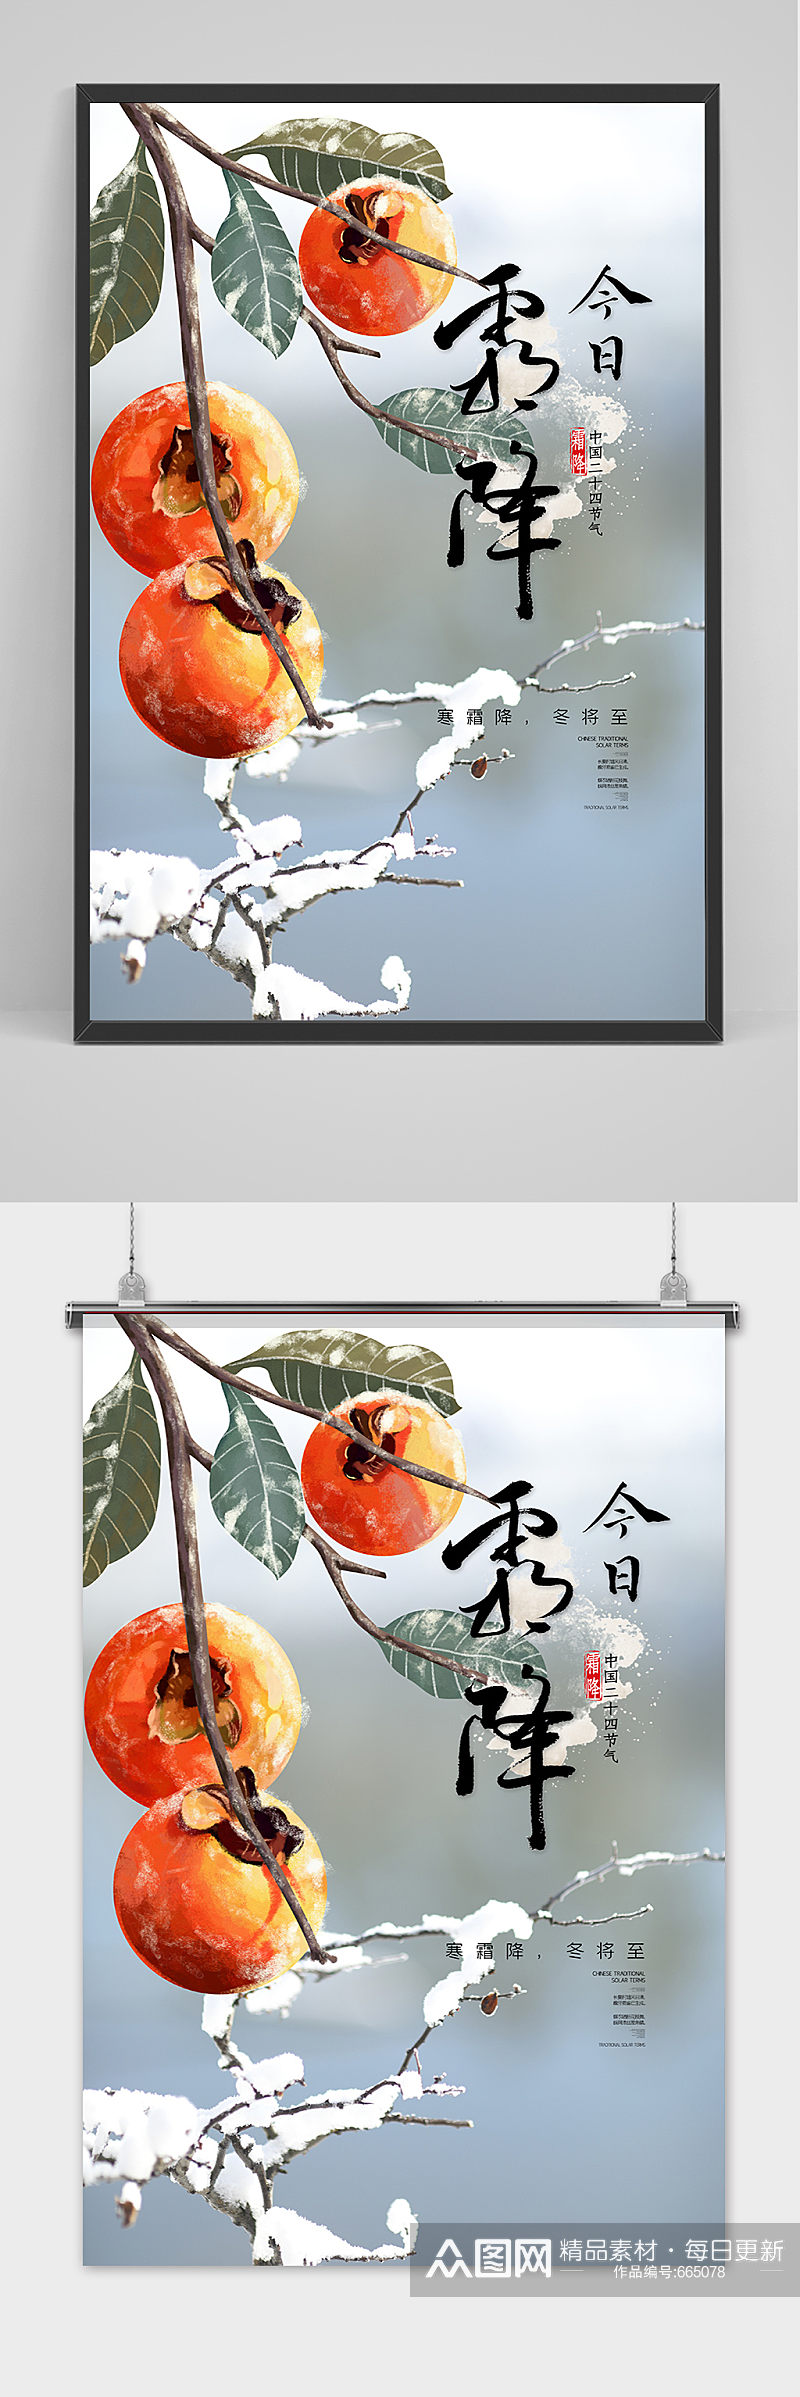 创意清新中国风霜降海报素材